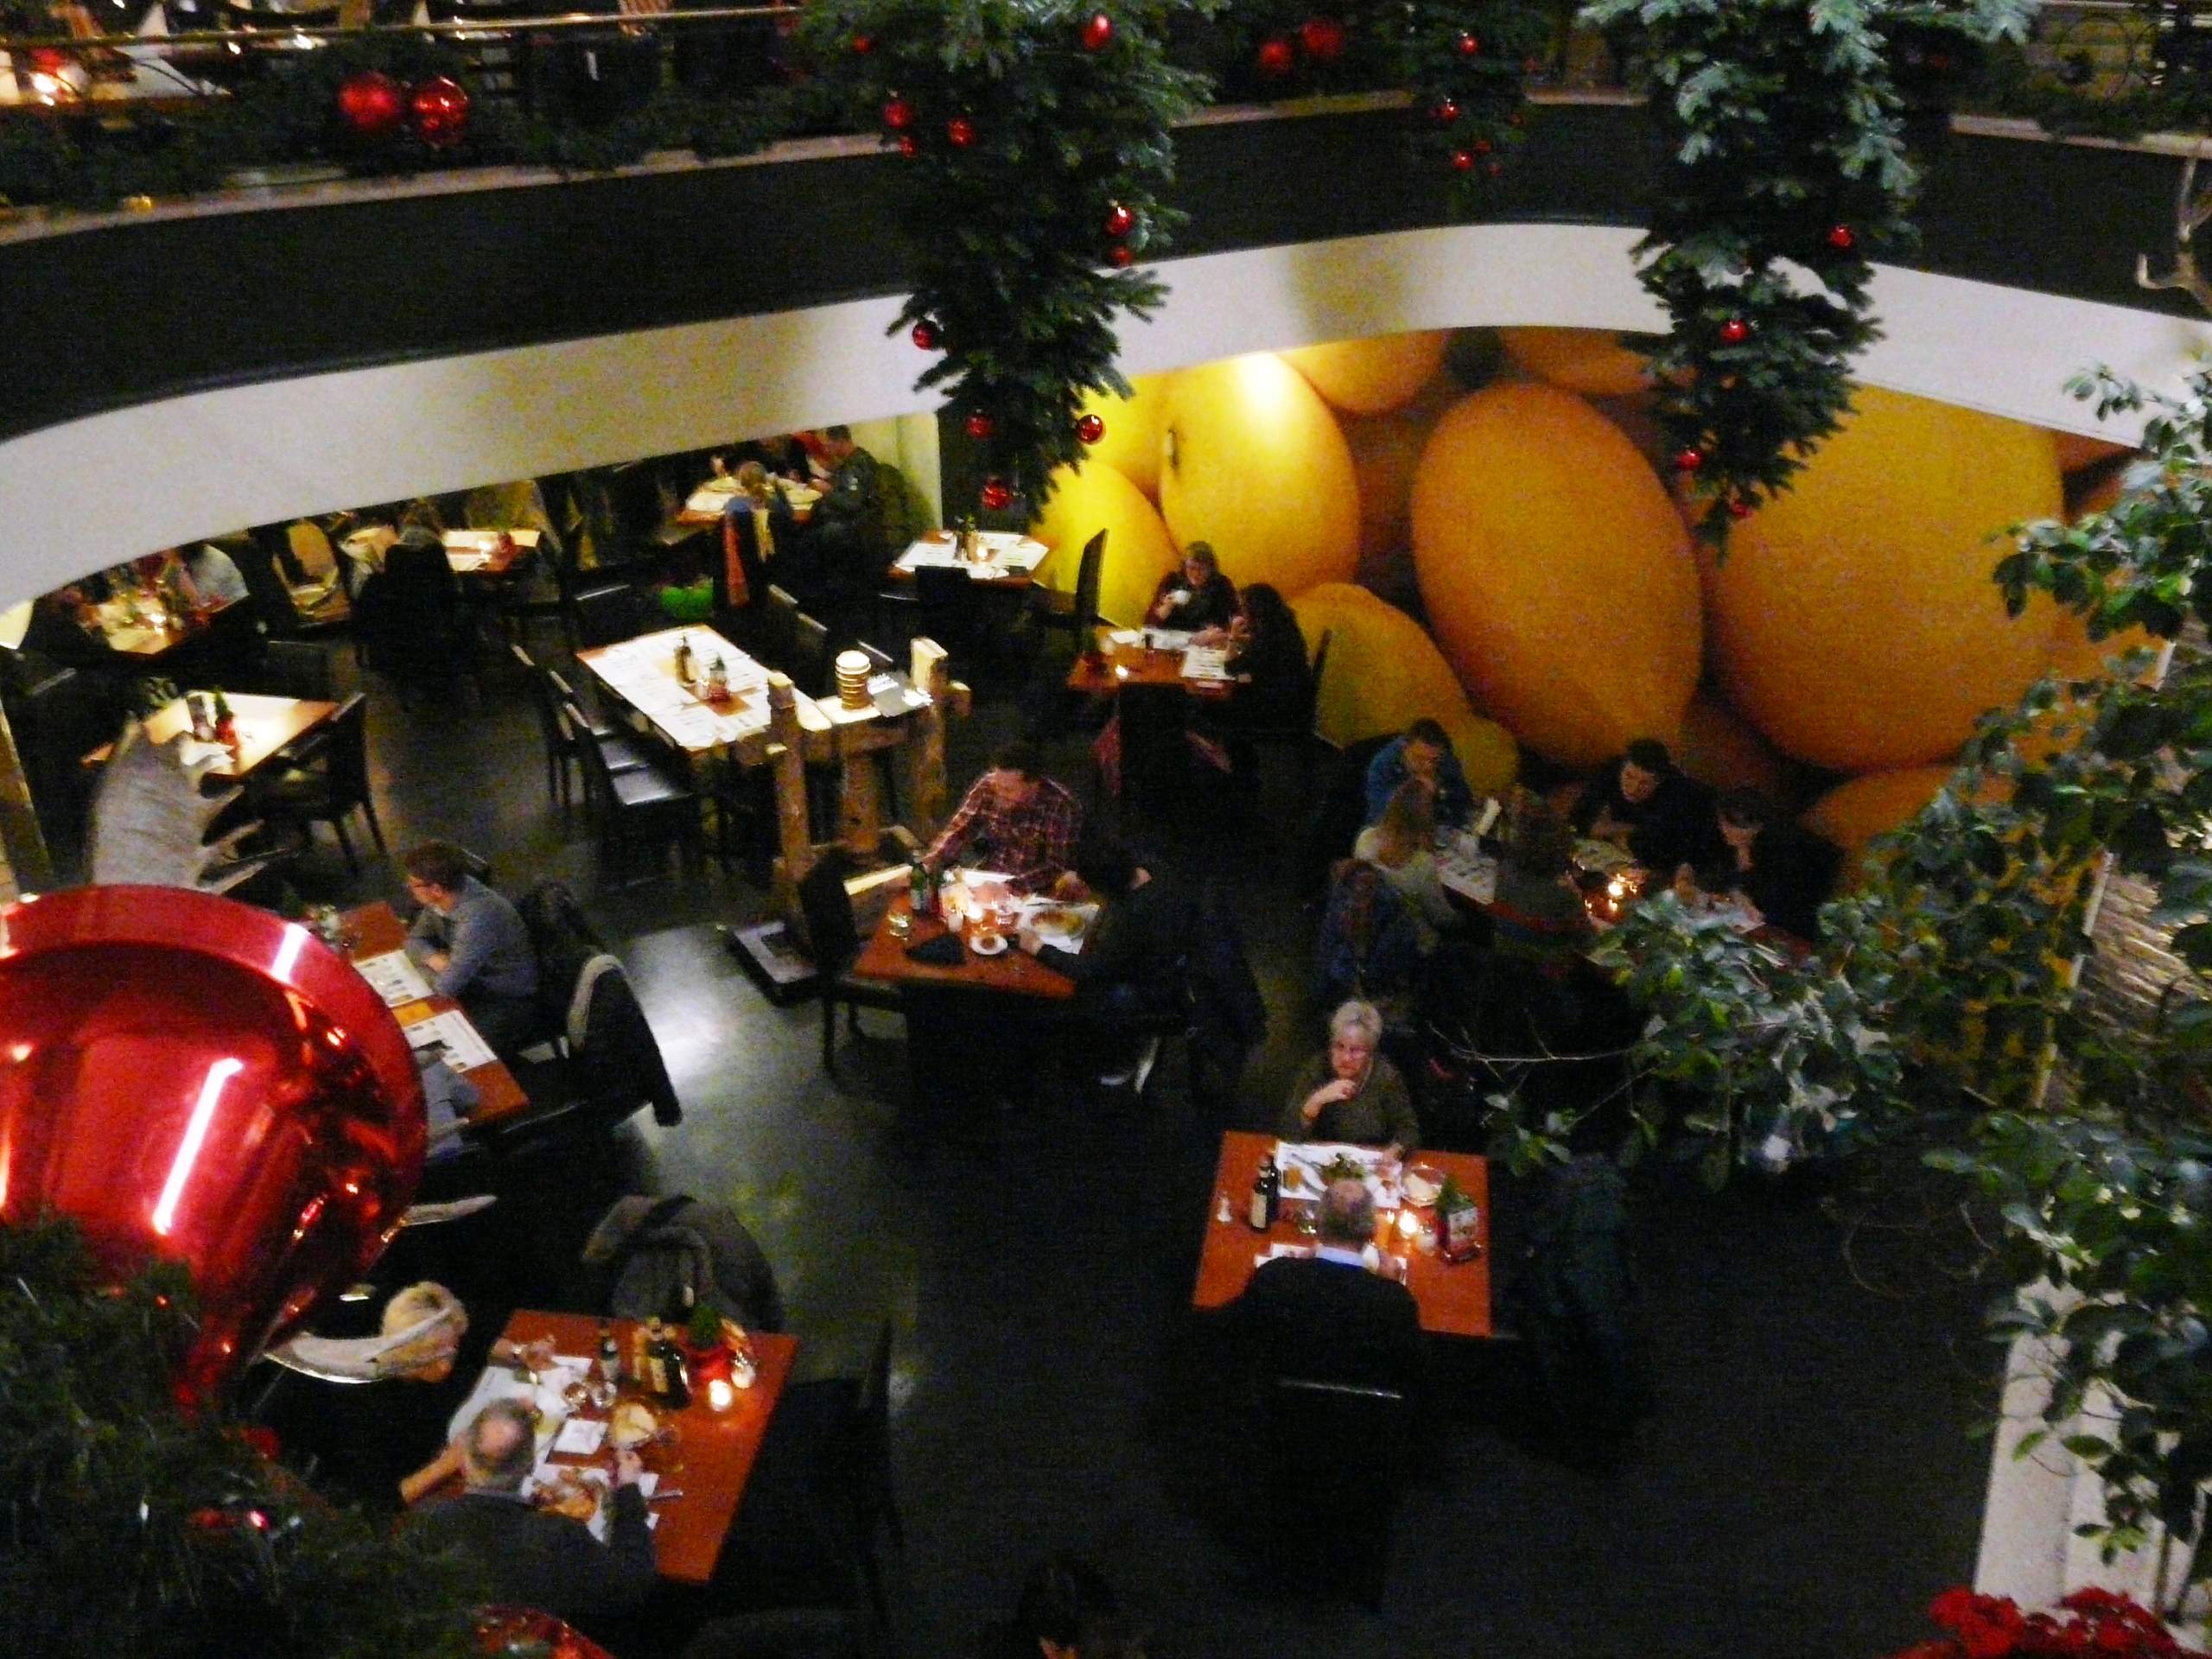 ιταλικο εστιατοριο ''provenza'' στη κεντρικη πλατεια  Hauptmarket Νυρεμβεργη